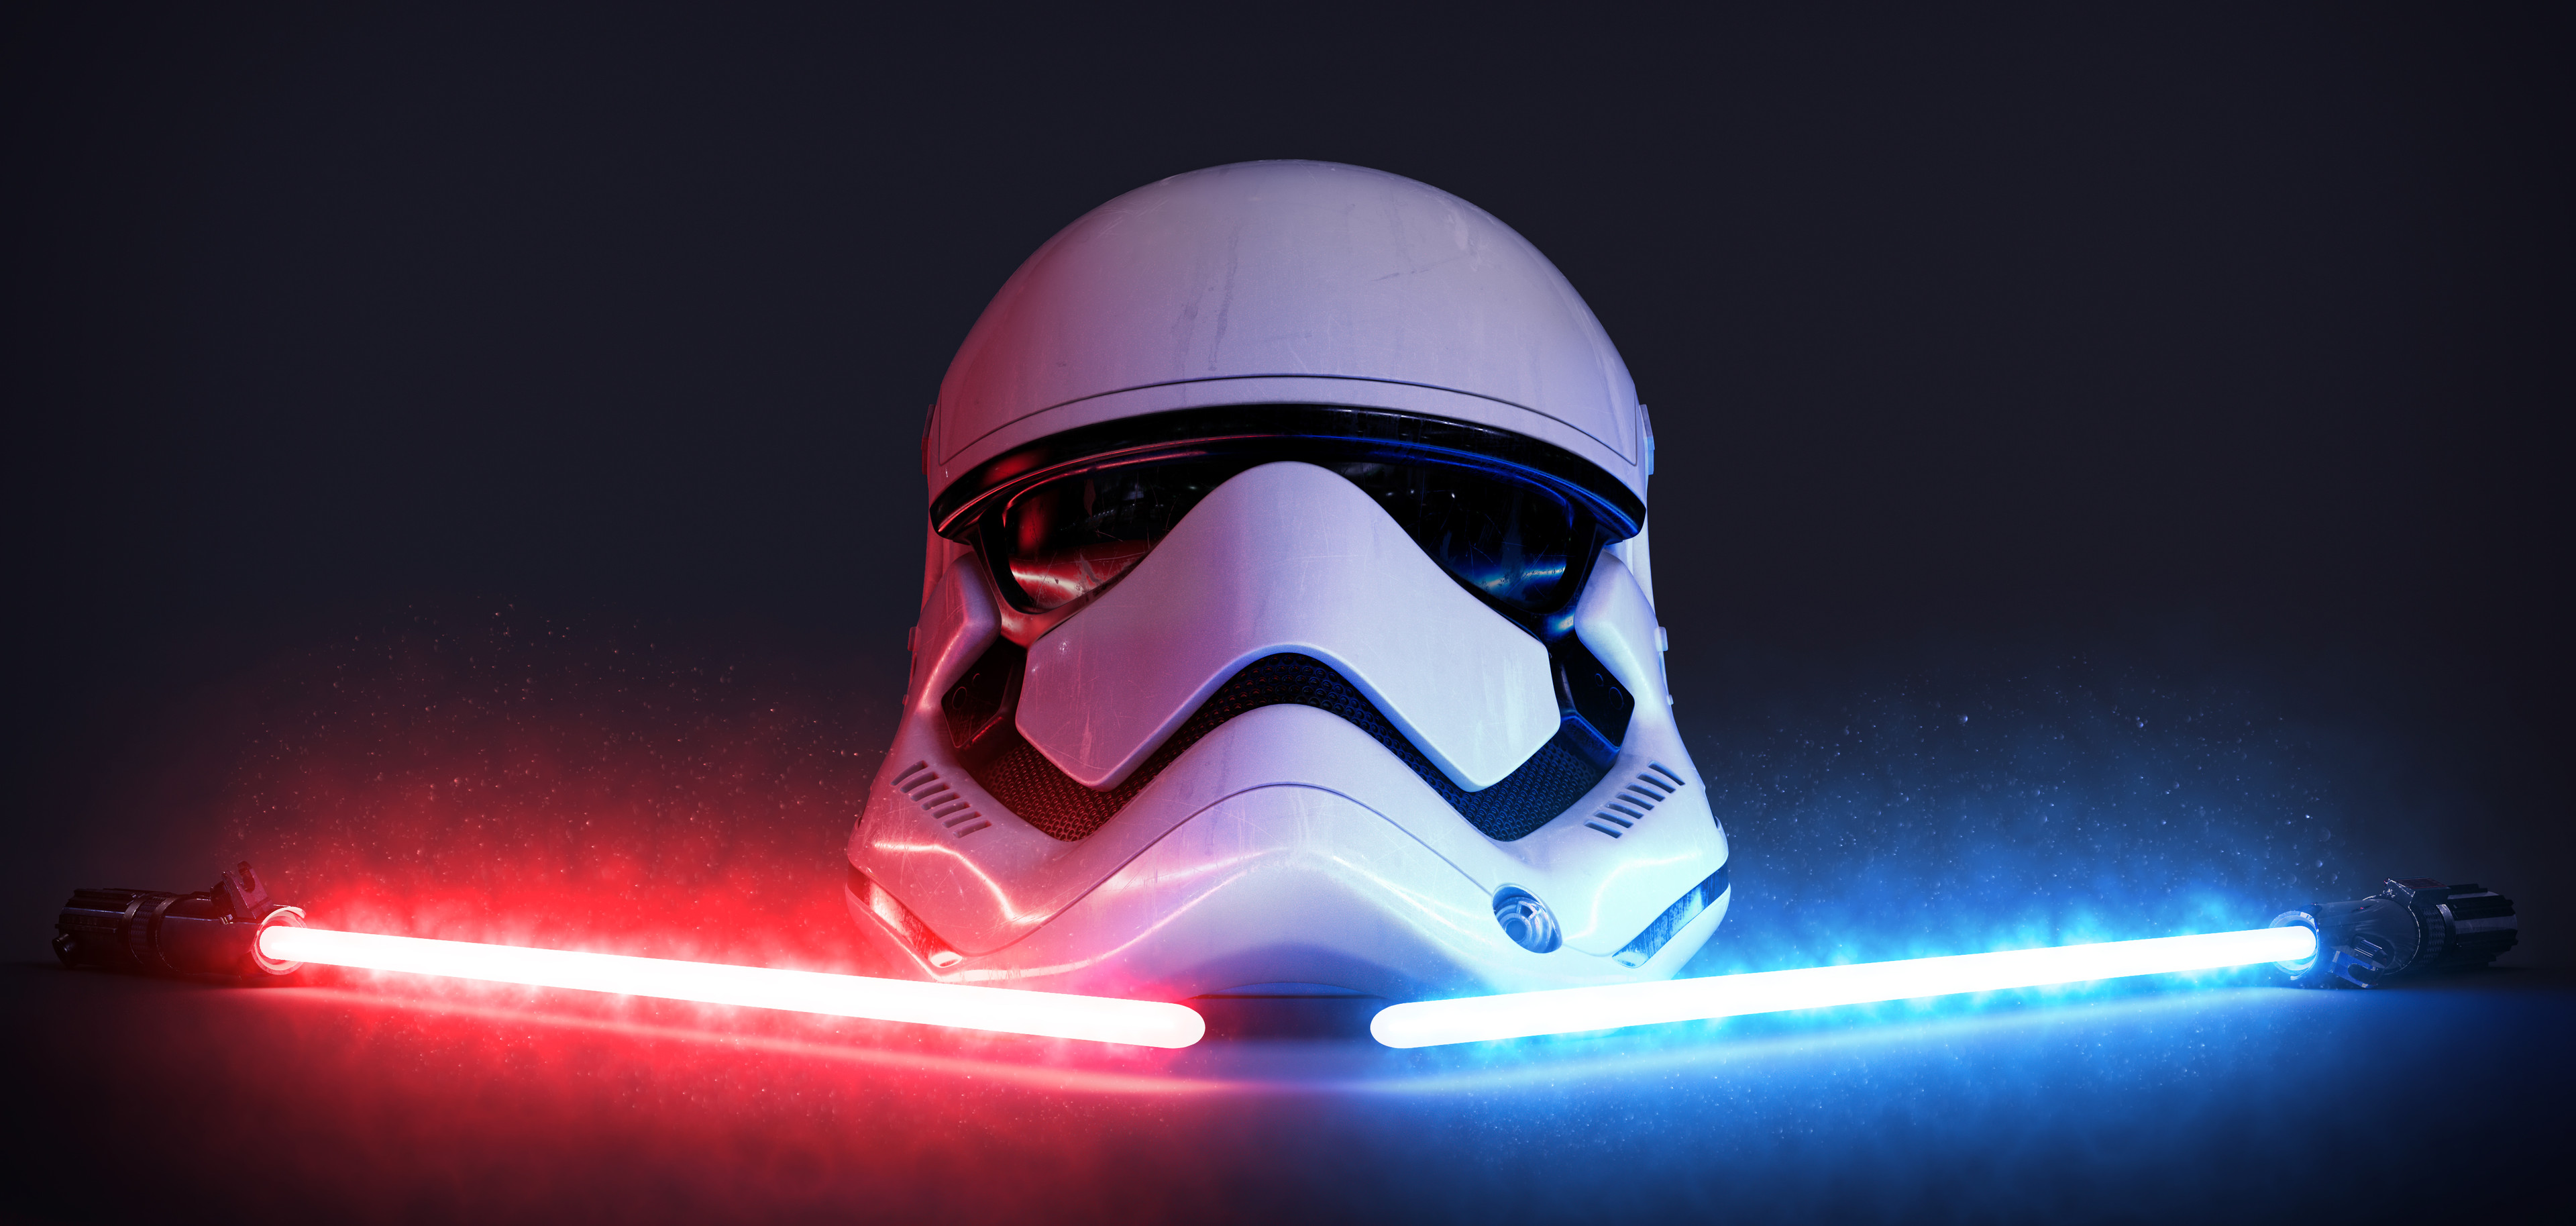 Star Wars Stormtrooper Lightsaber Ultrawide Artwork Digital Art CGi ArtStation Helmet 3840x1827